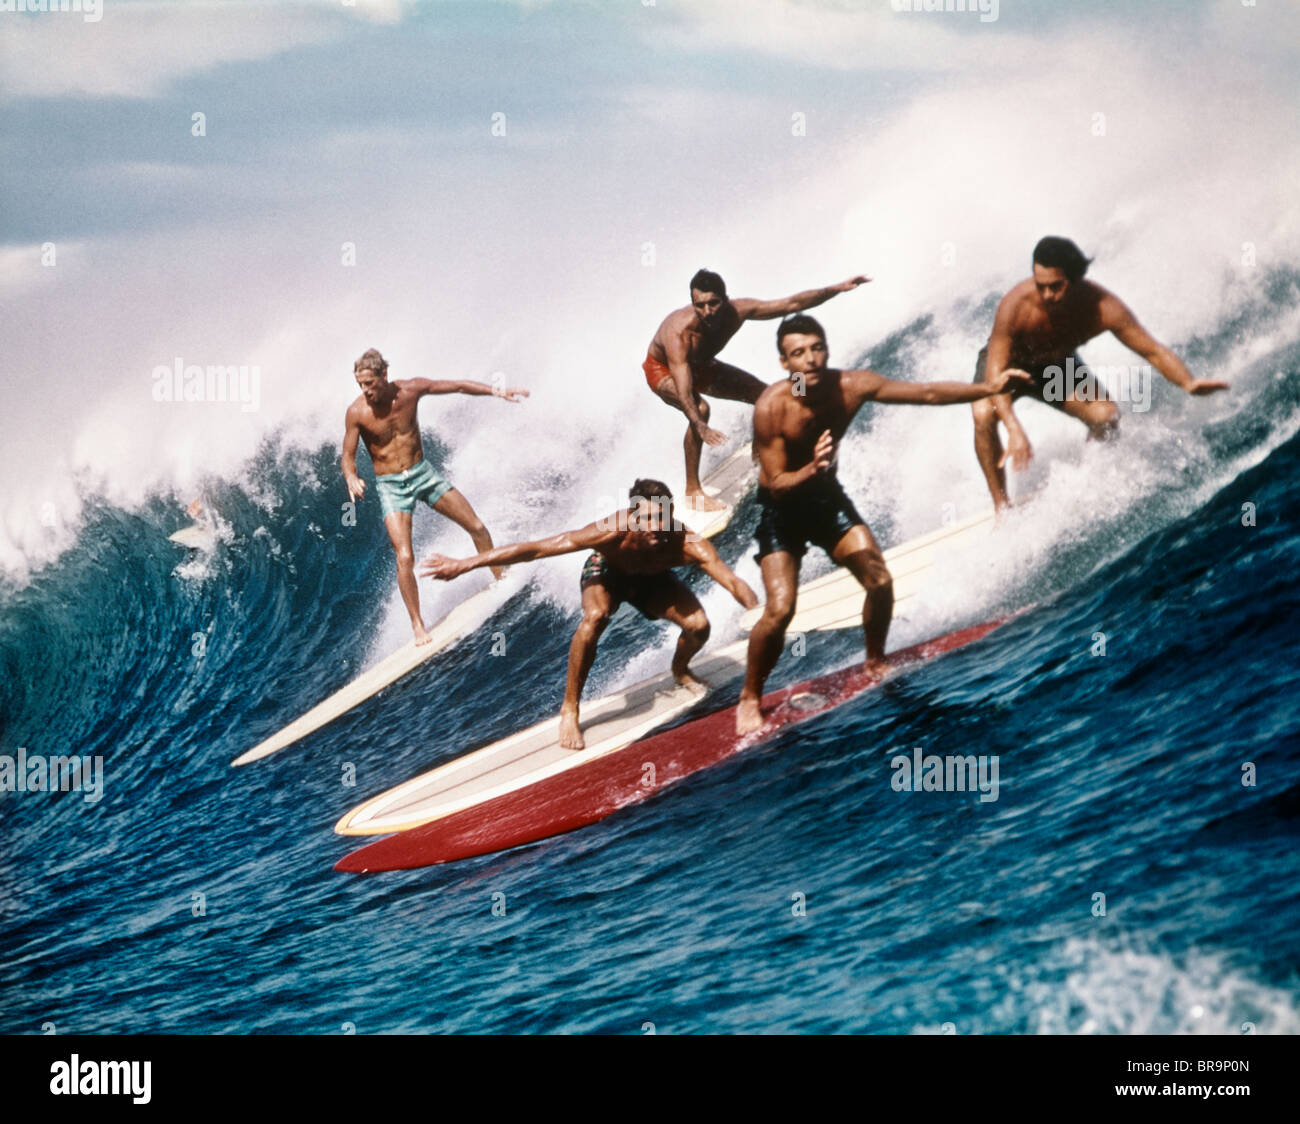 California Adventure Surfing Big Ocean Waves Palm Trees Surfboard Hoodies for Men